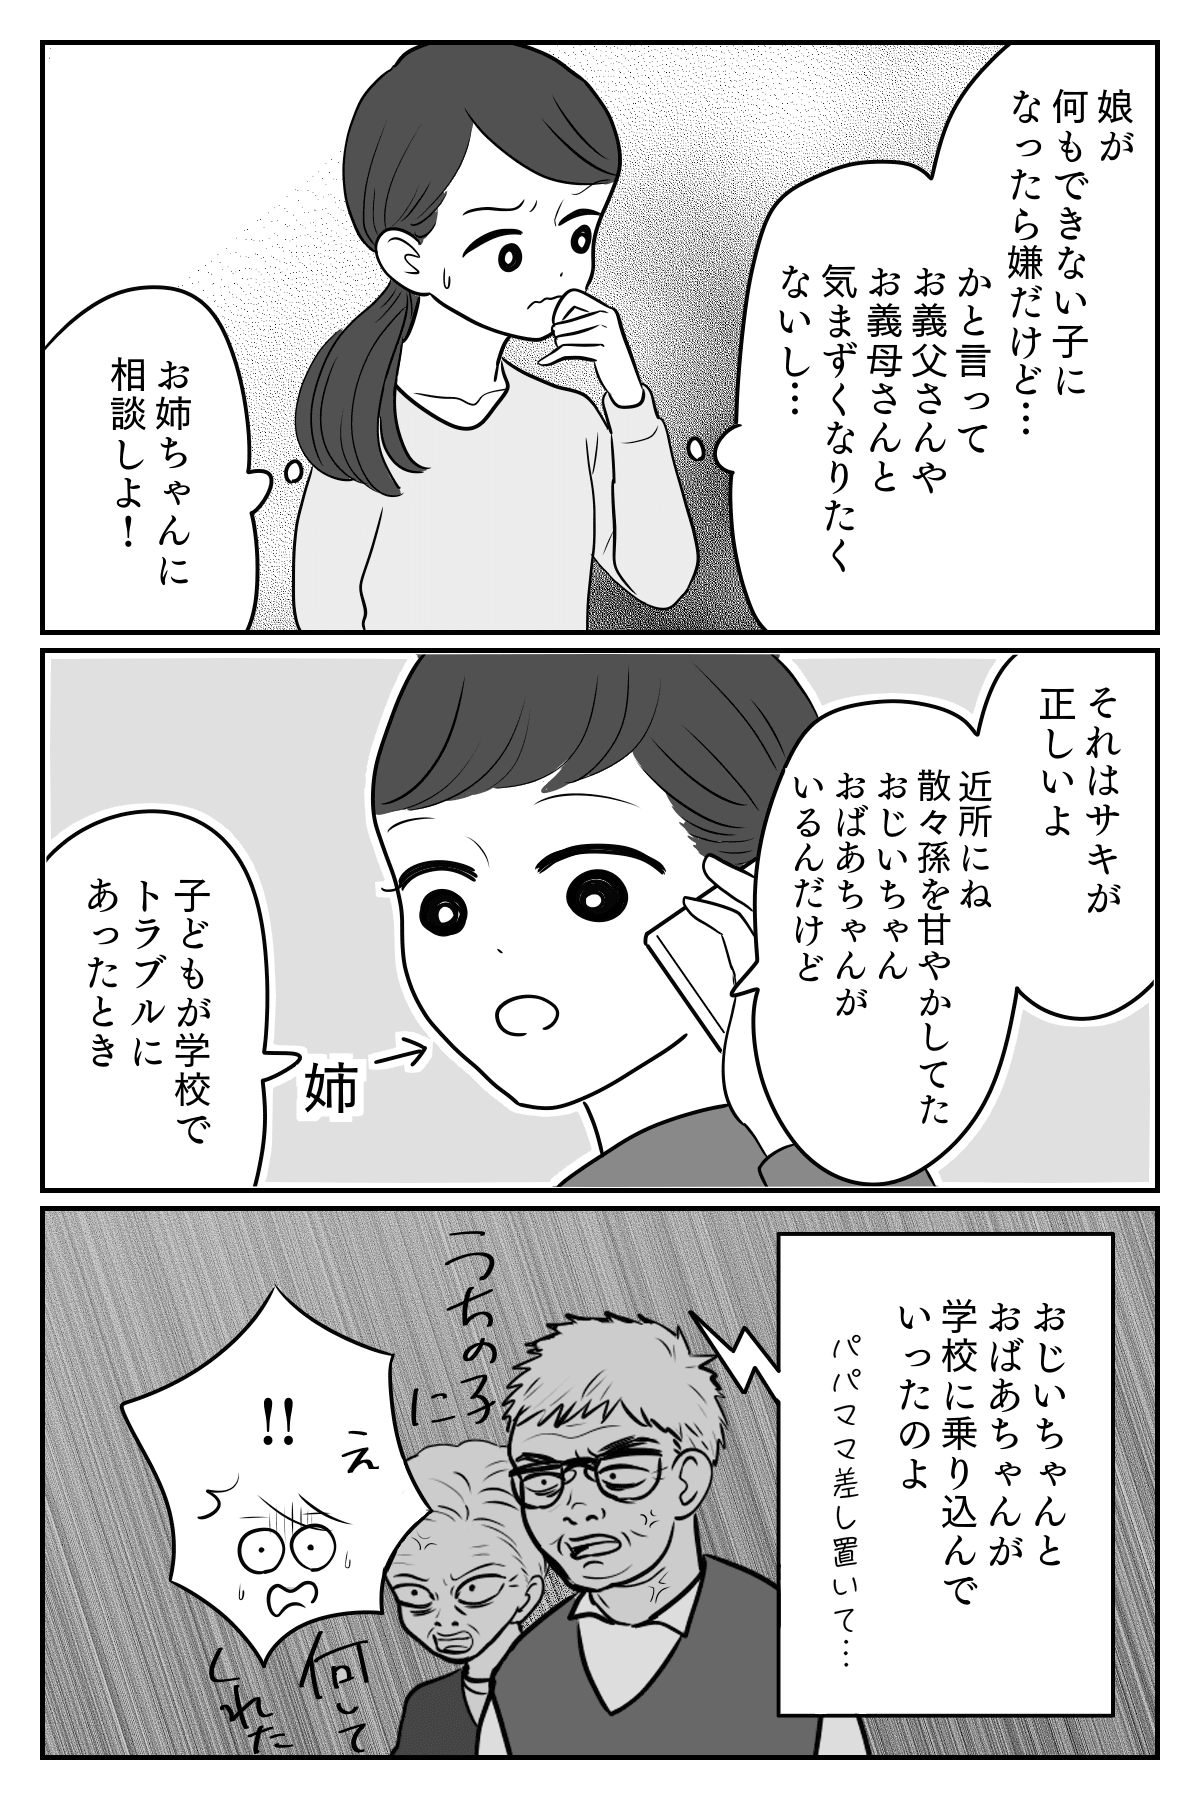 甘やかし2-1 (2)